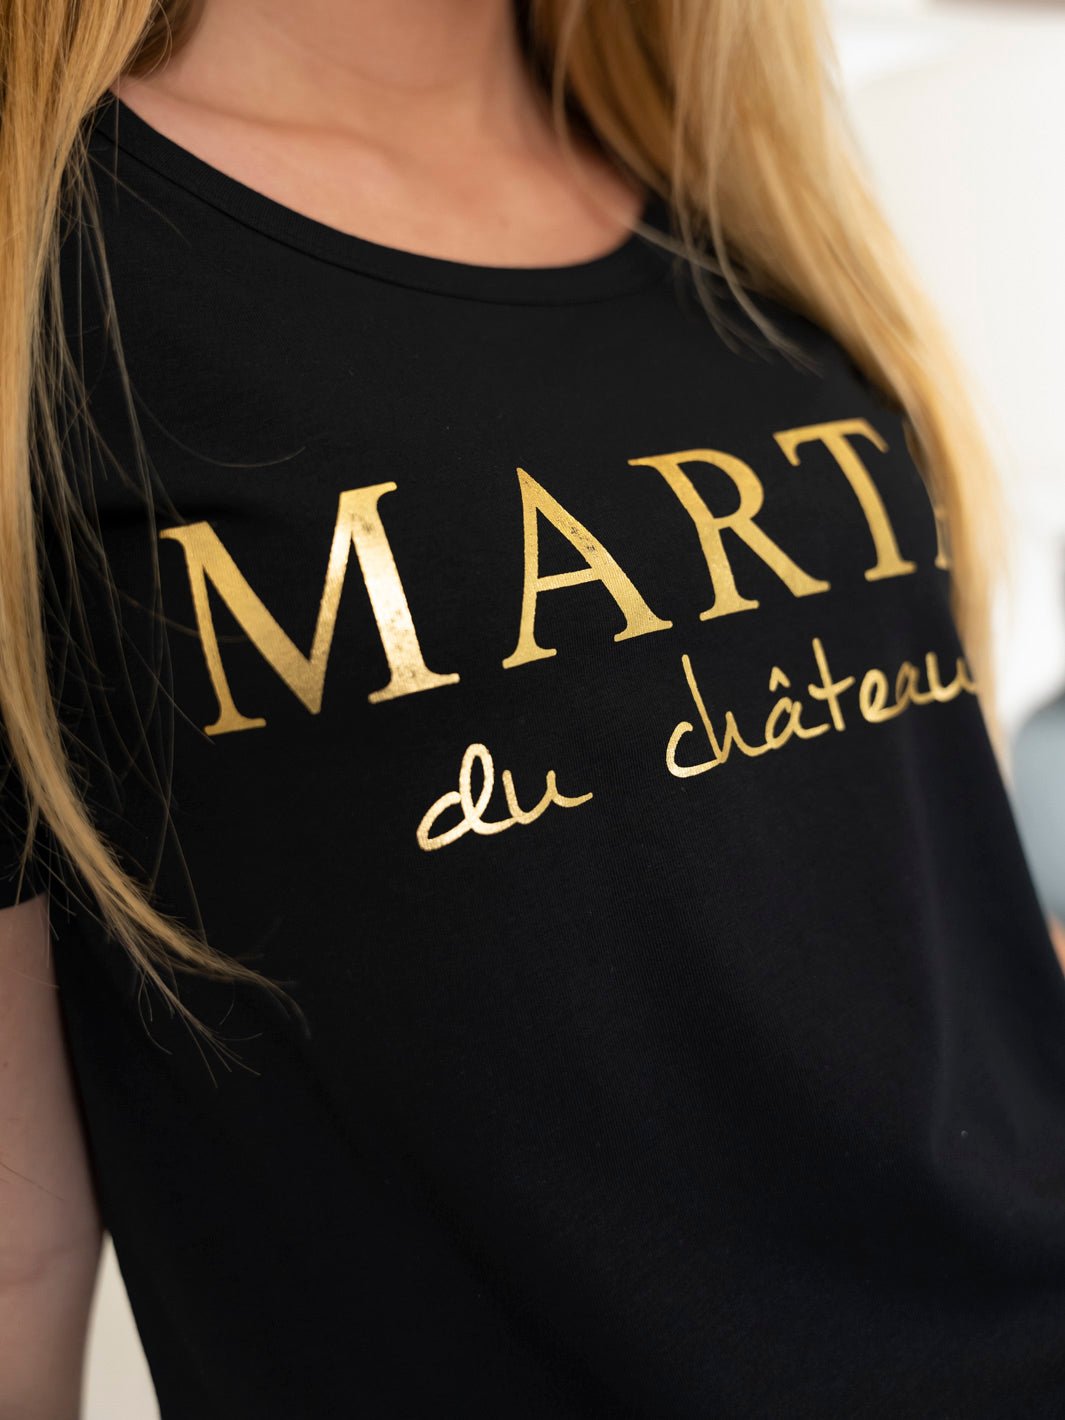 Marta du Chateau Jeanette tee black - Online-Mode